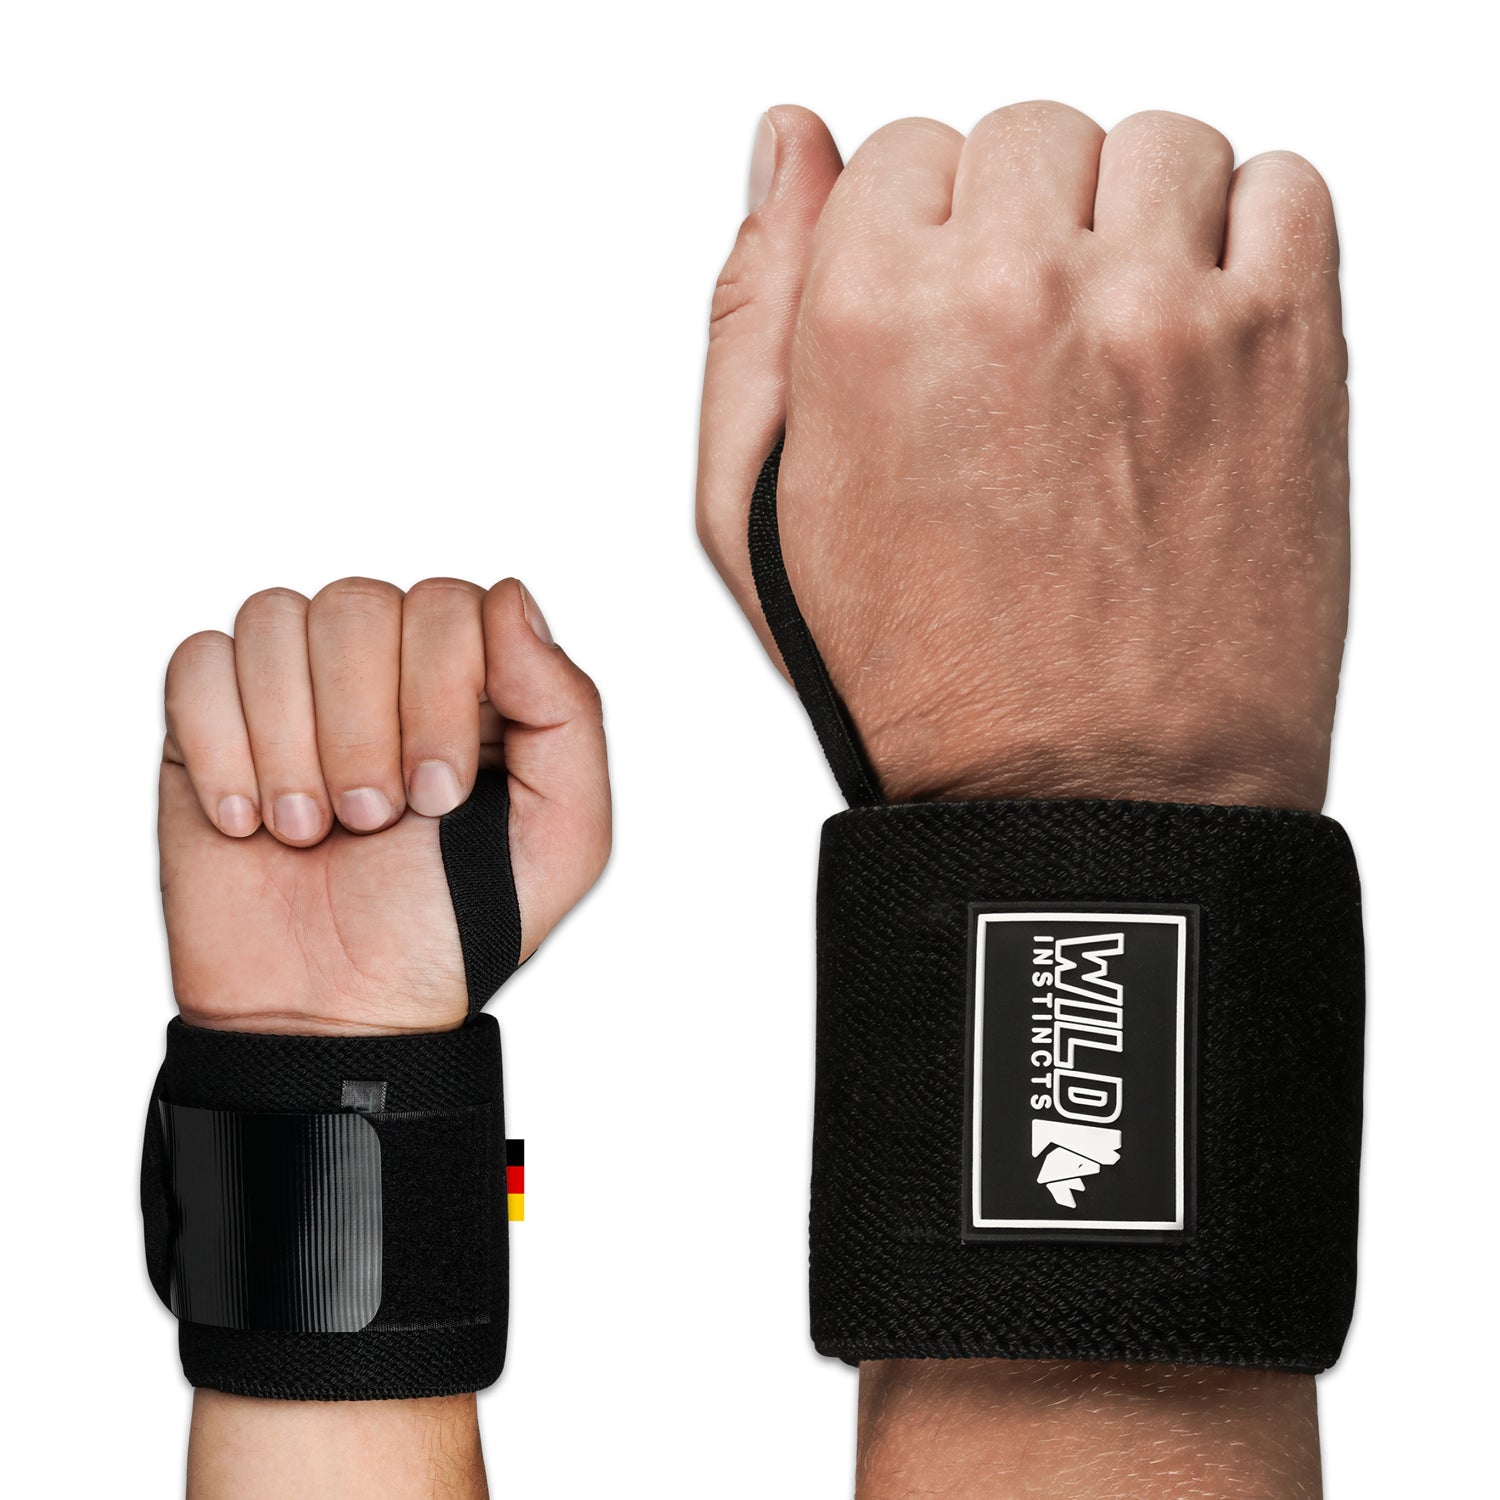 Handgelenk Bandagen / Wrist Wraps